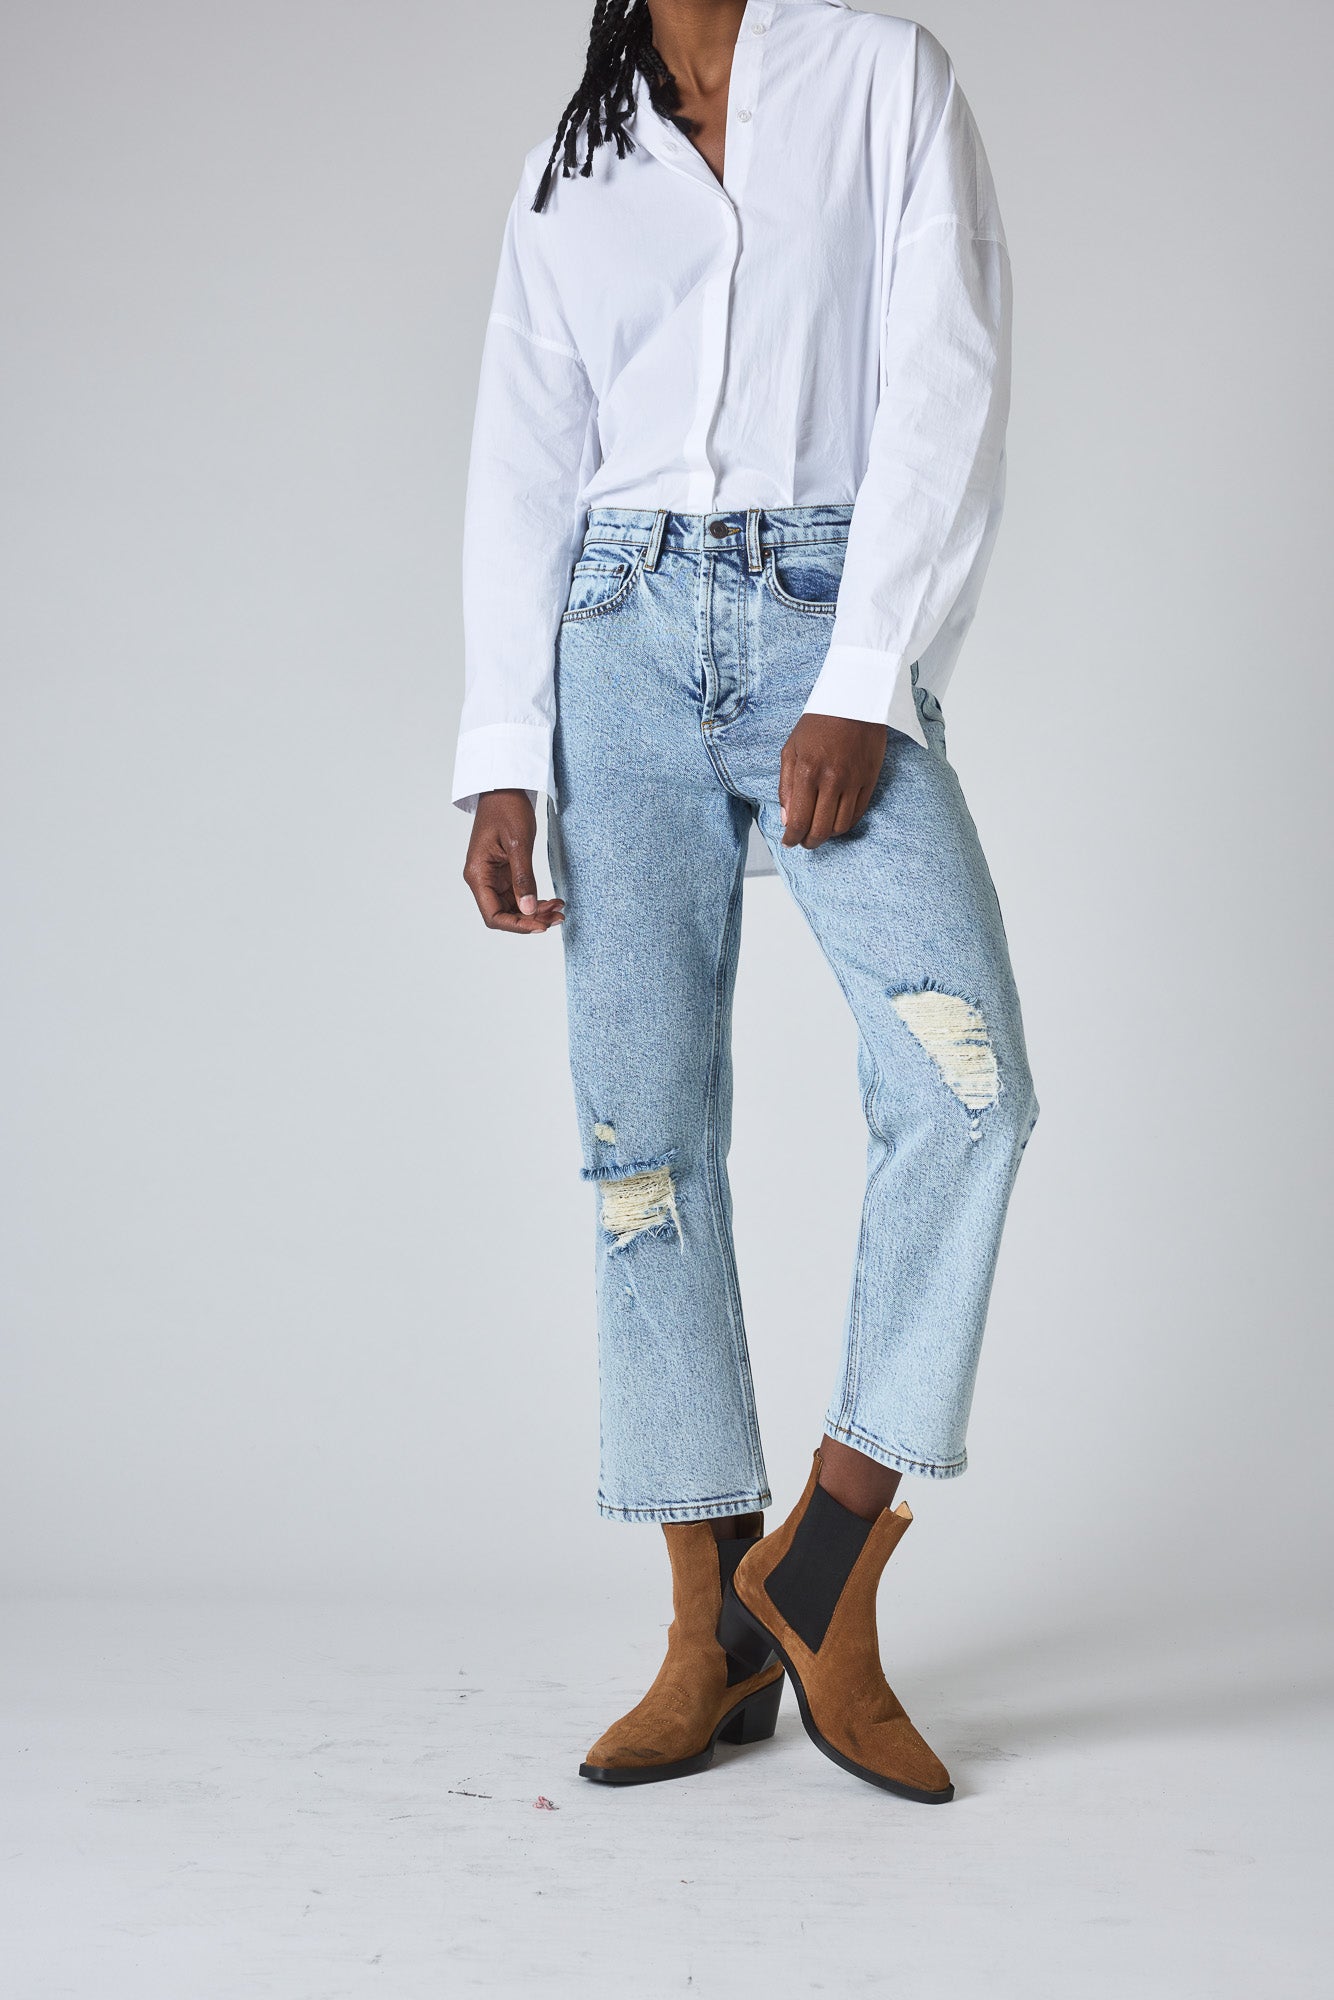 Men Baggy Jeans Hip Hop Denim Pants Casual Retro Loose Straight Trouser  Oversize 